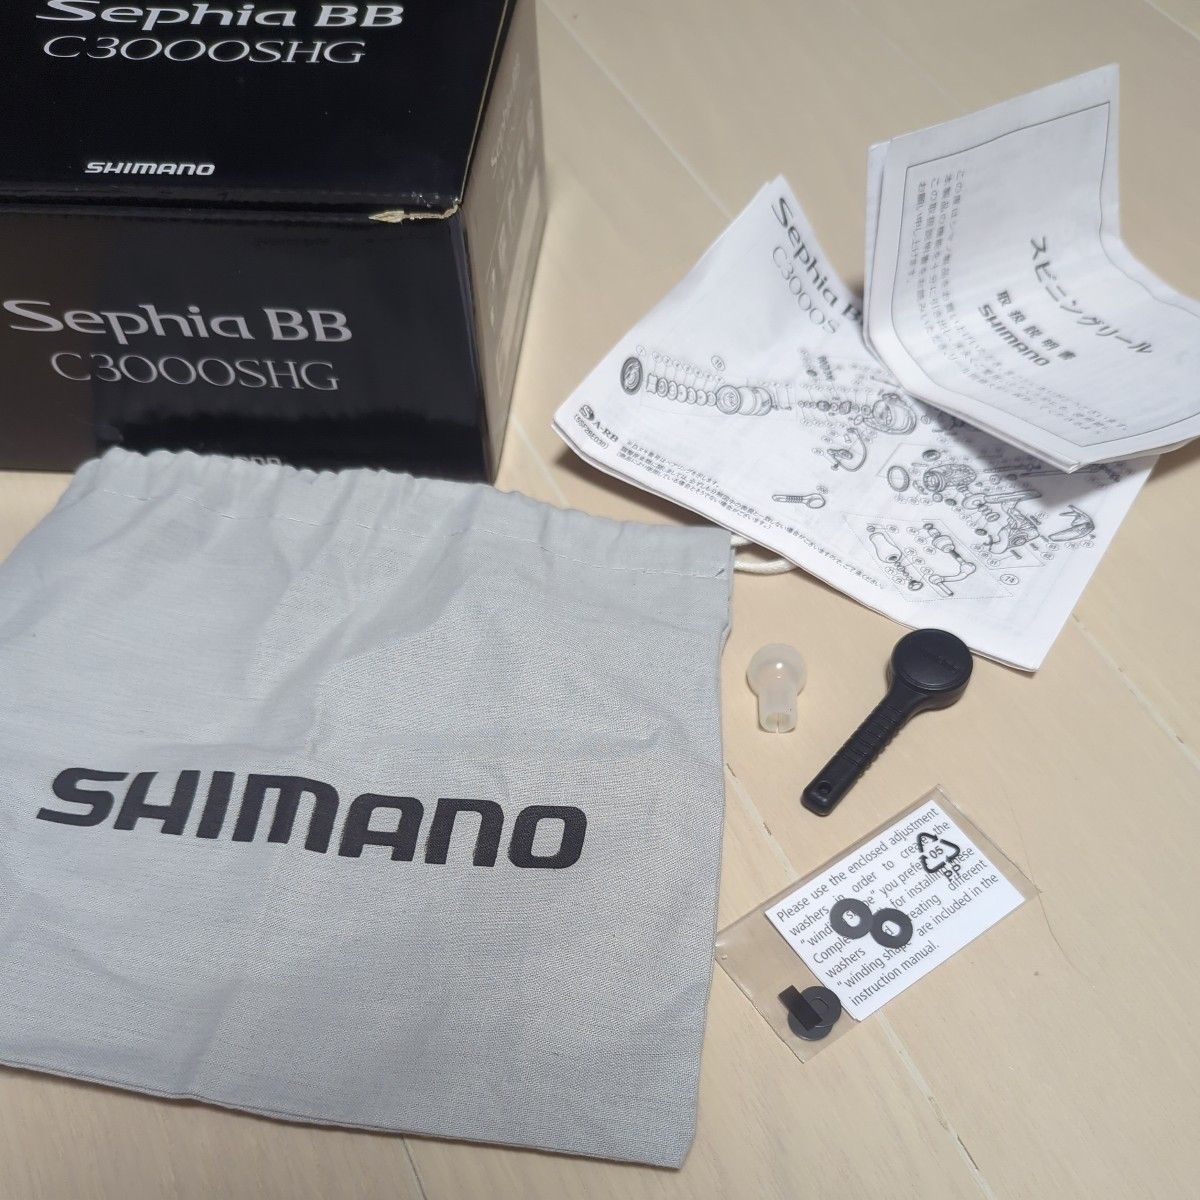 シマノ 18 セフィアBB C3000SHG SHIMANO Sephia